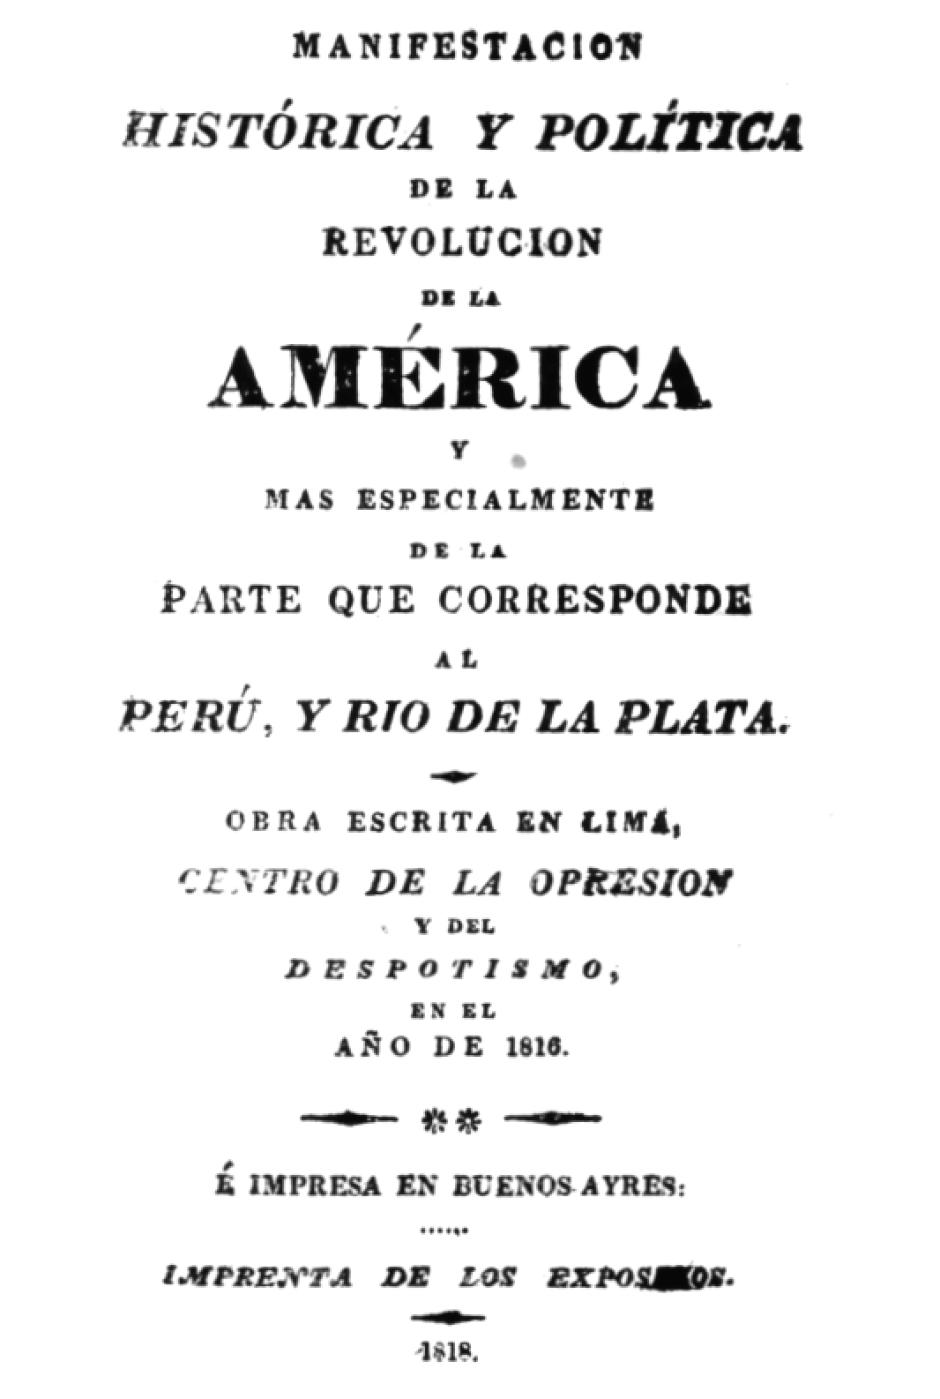 Portada de la "Manifestación histórica y política de la revolución de América", escrito por José de la Riva Agüero y Sánchez Boquete